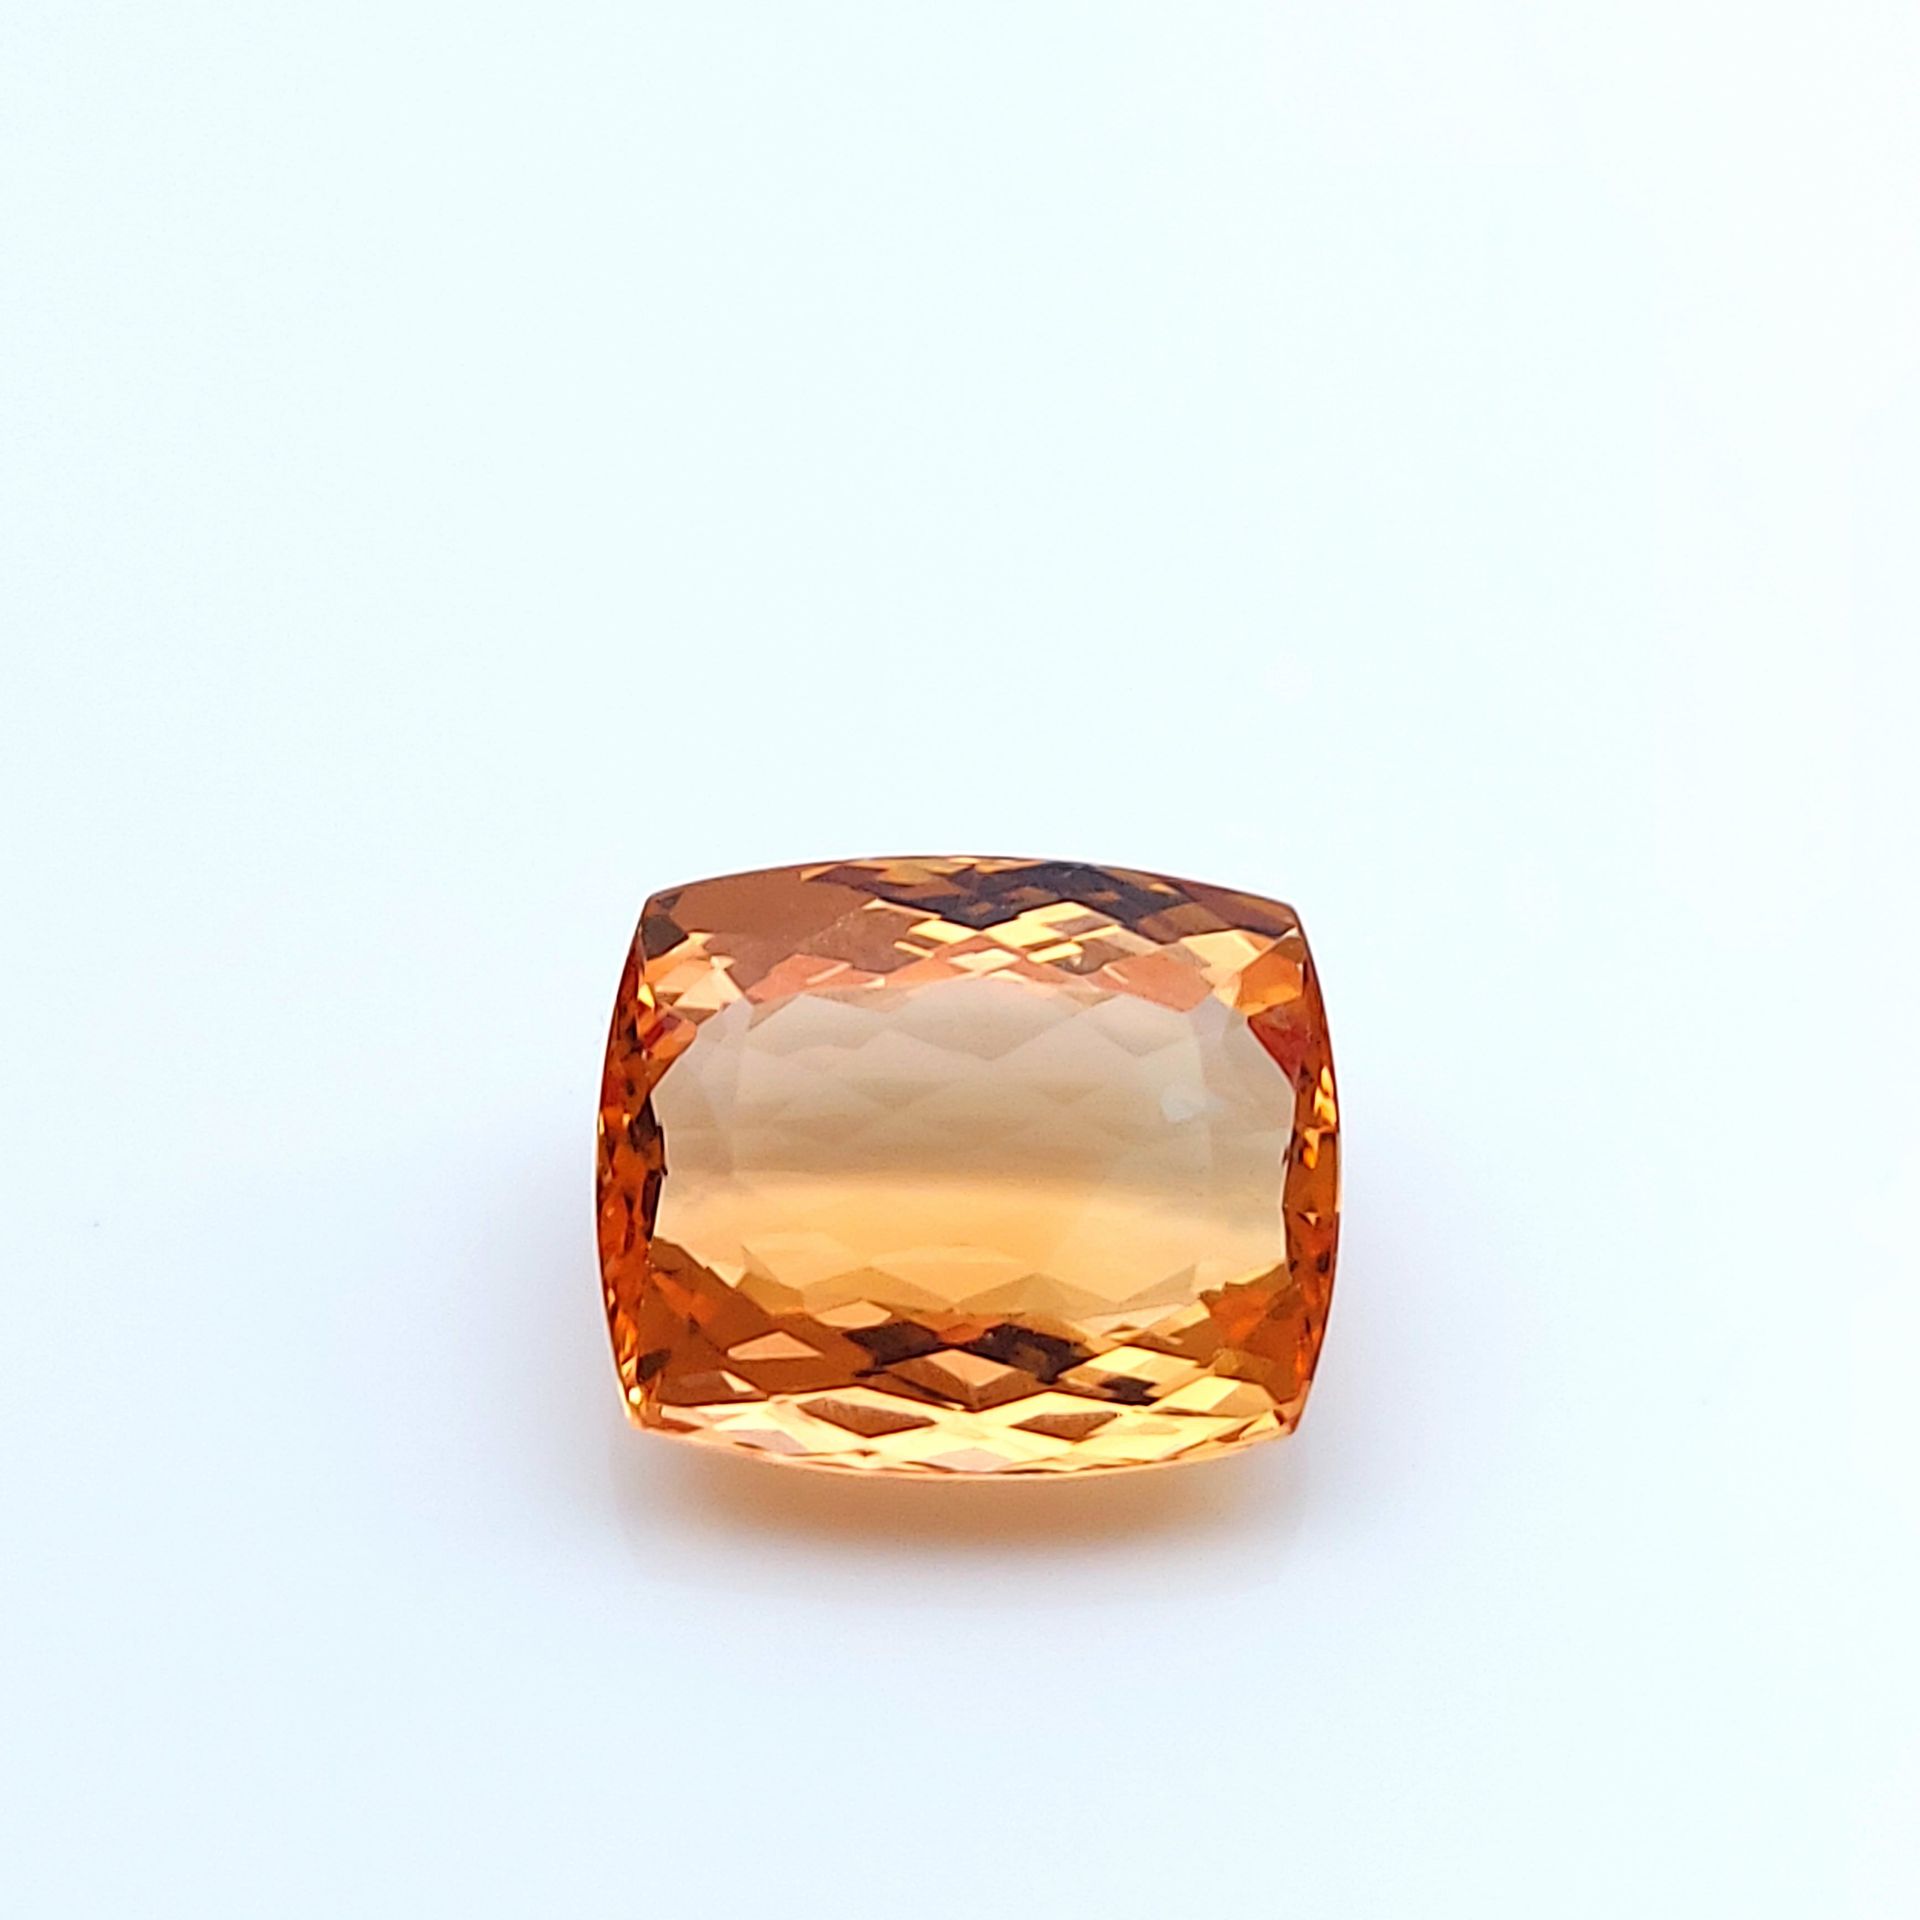 Null TOPAZE IMPERIALE - Provenance Brésil Ouro Preto - Couleur cognac orange ros&hellip;